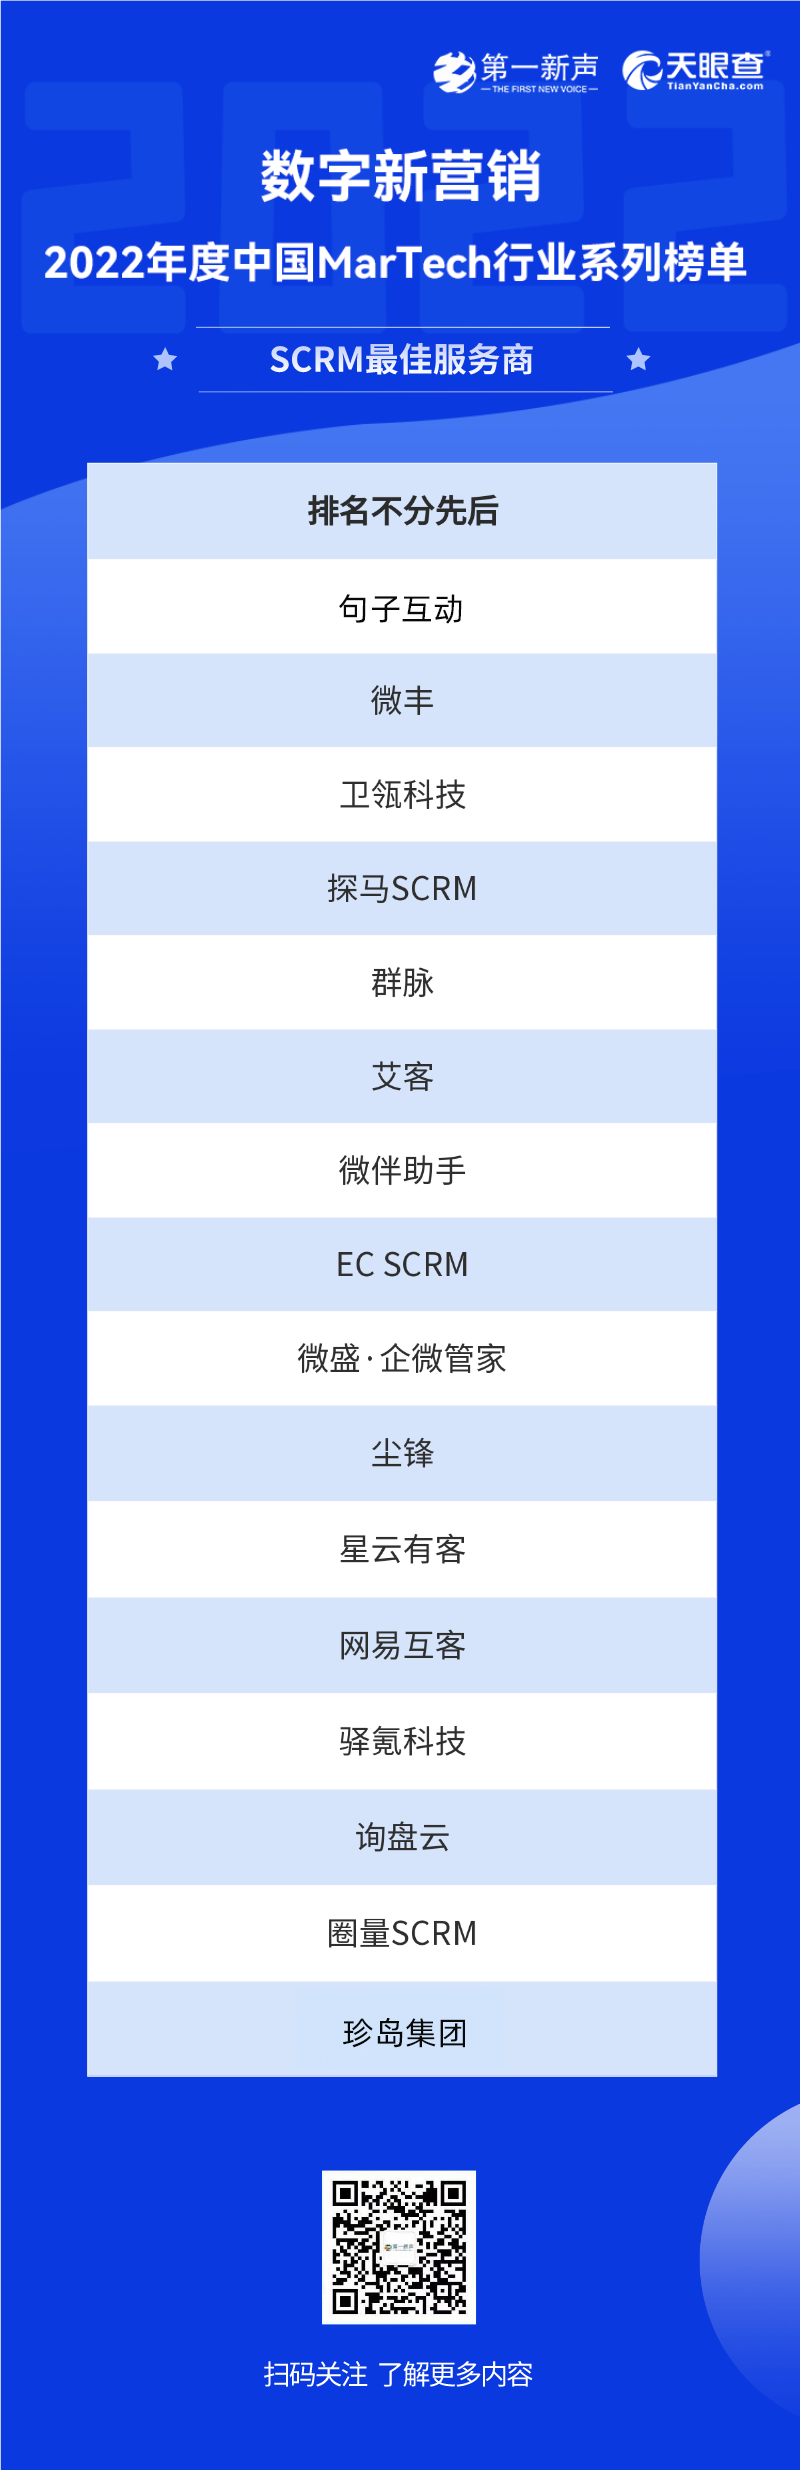 2022年度中国MarTech行业系列榜单正式发布，句子互动入选SCRM最佳服务商 第9张